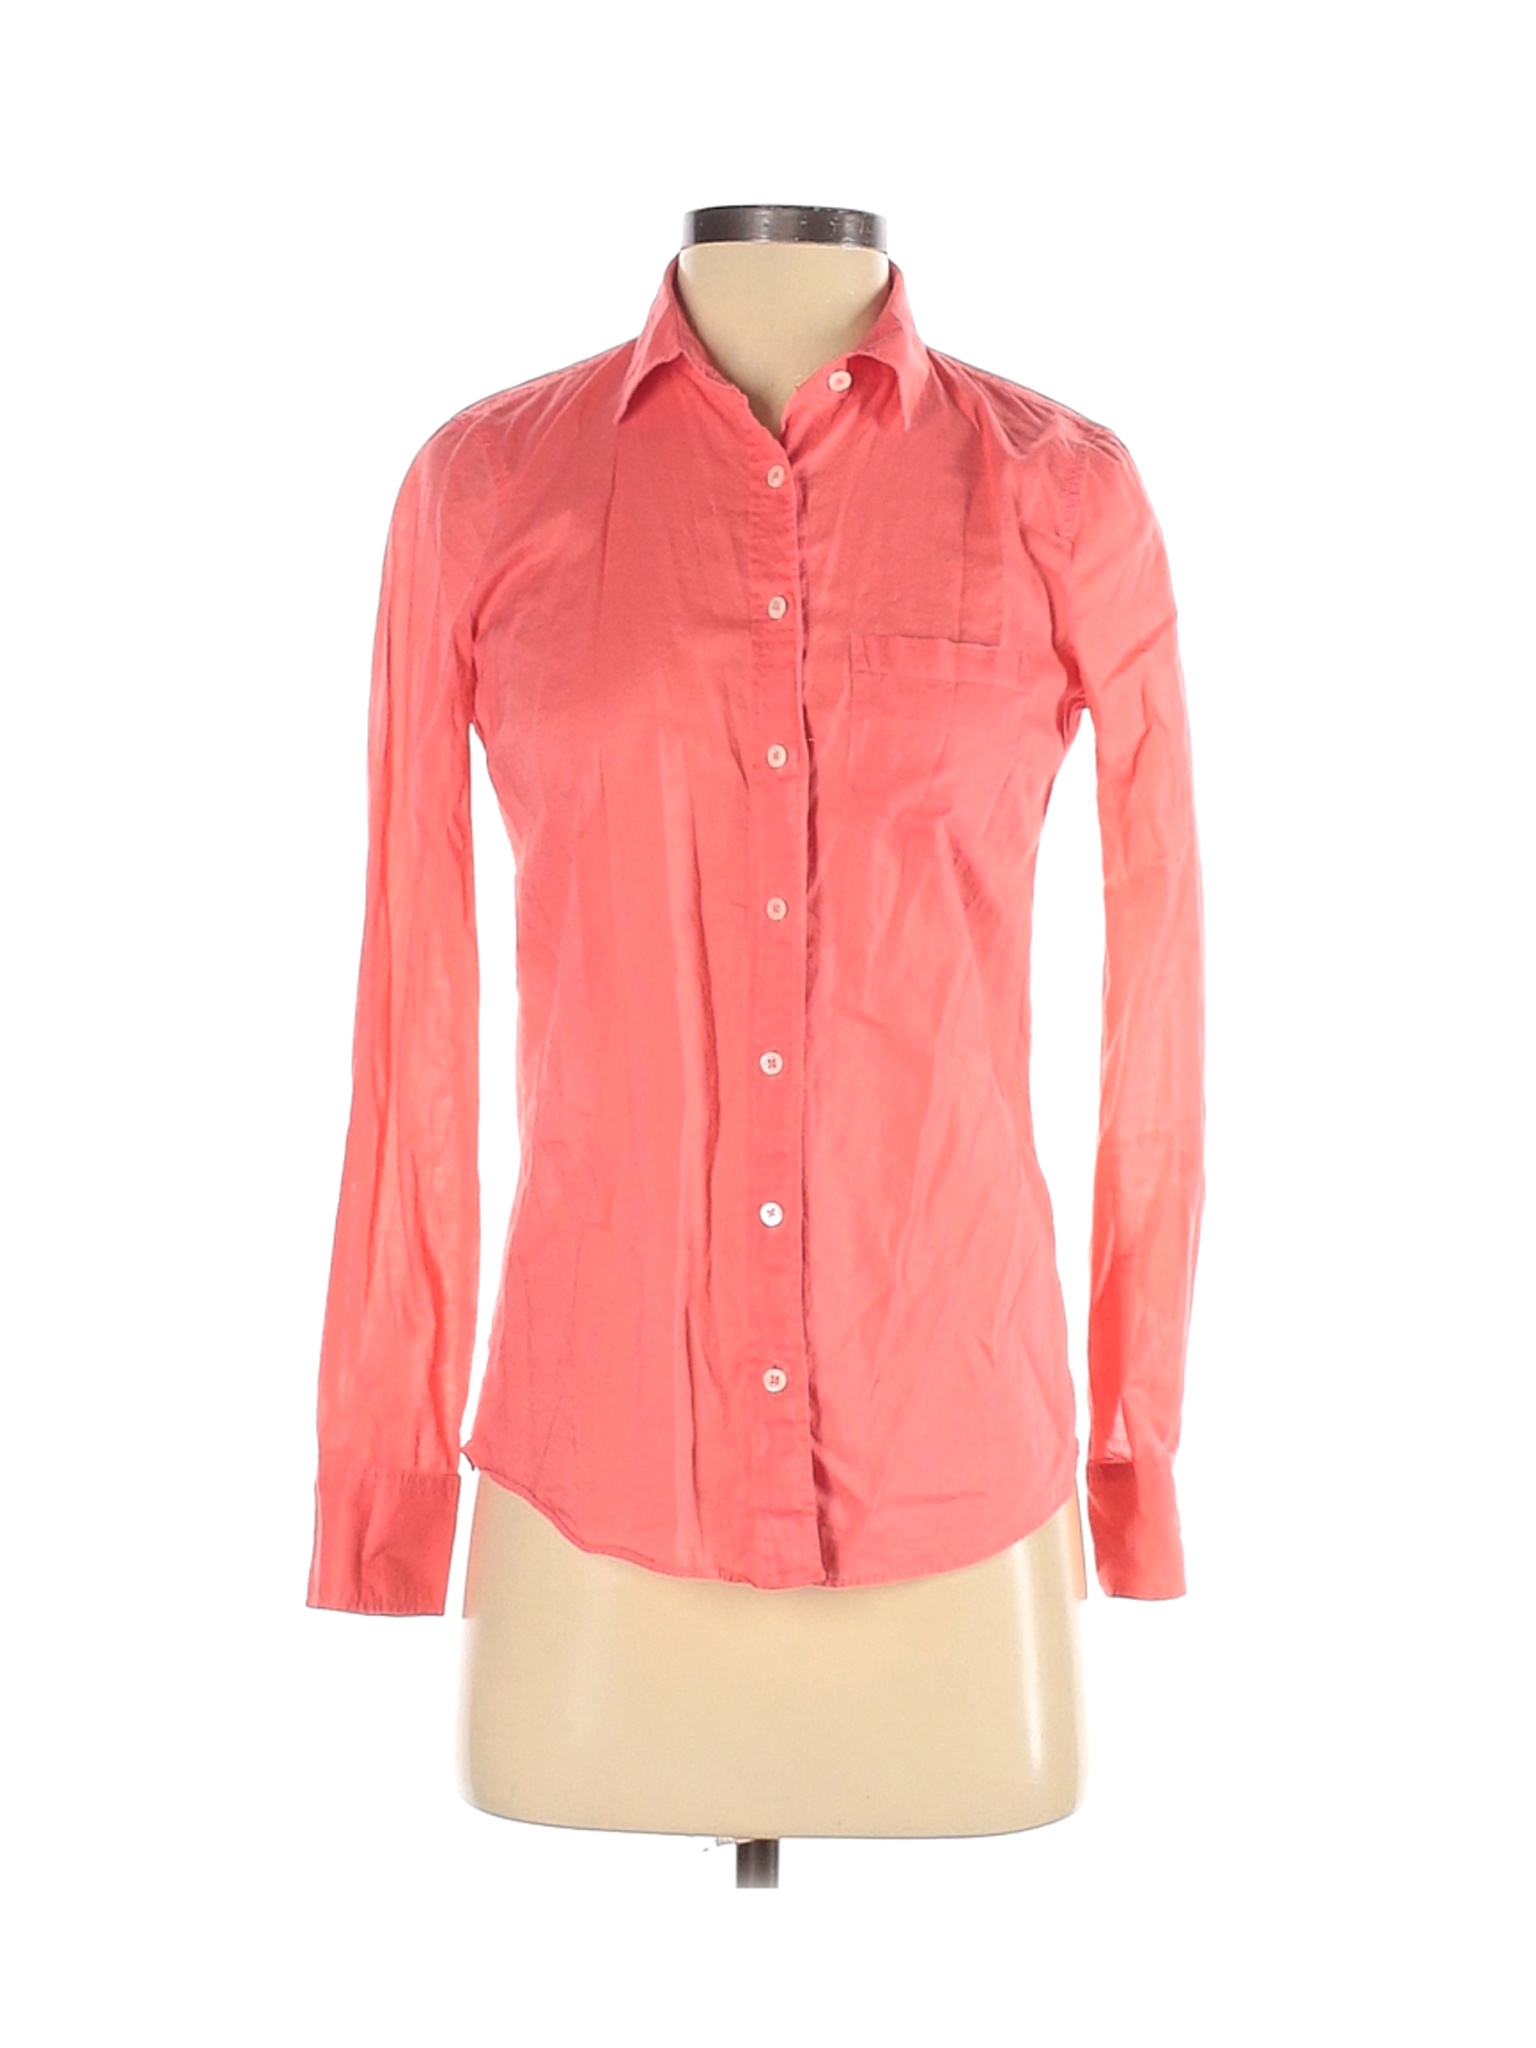 J.Crew Women Pink Long Sleeve Button-Down Shirt 00 | eBay